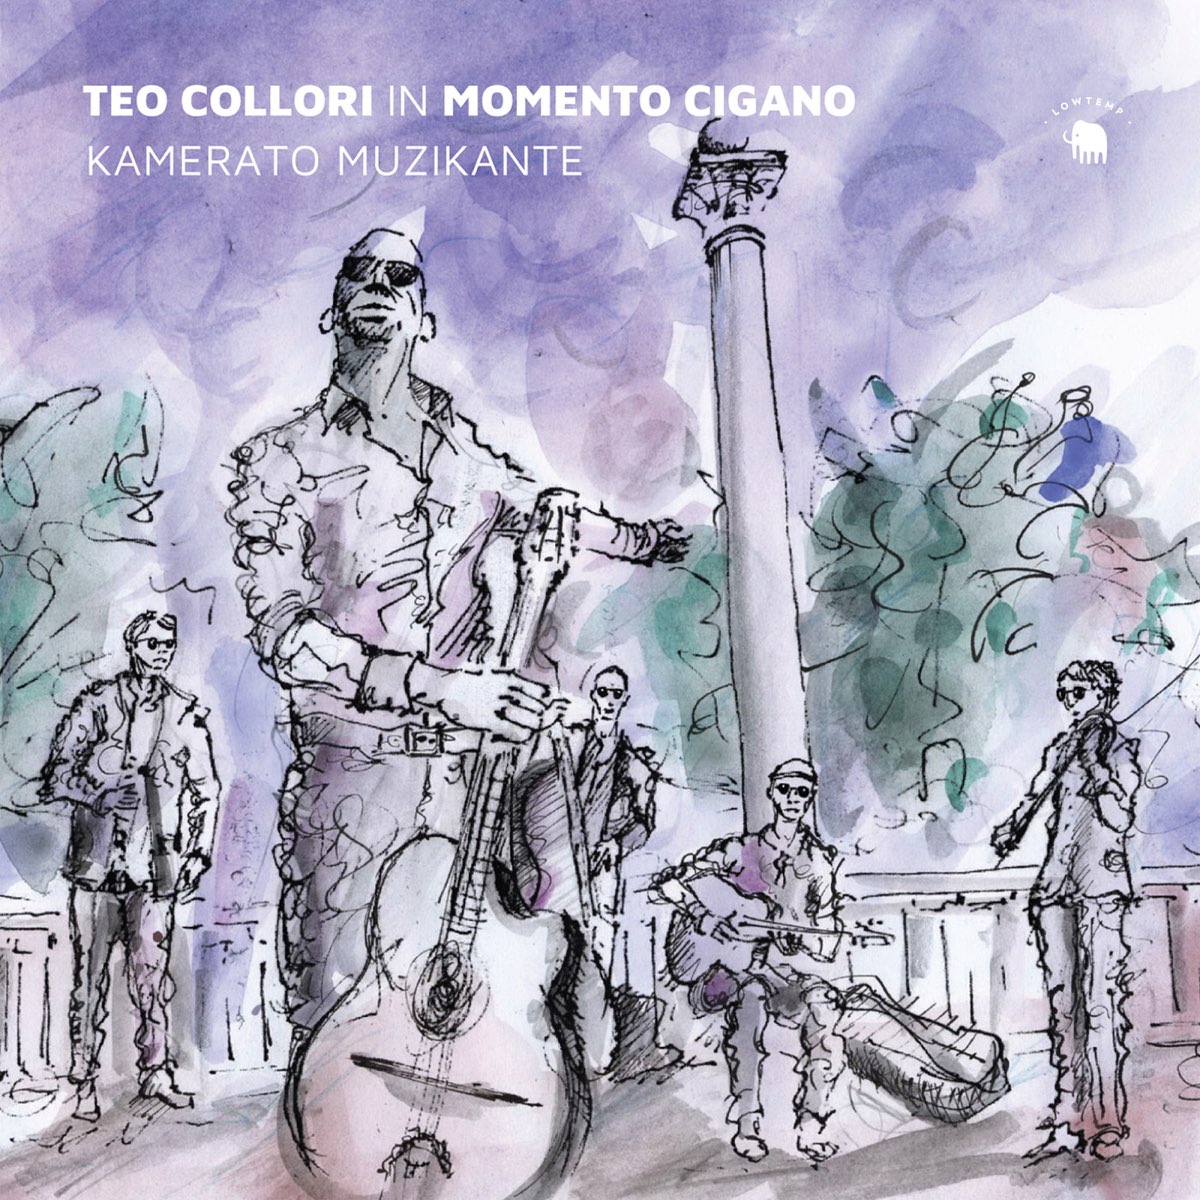 Kamerato Muzikante (In Momento Cigano) - Album by Teo Collori - Apple Music